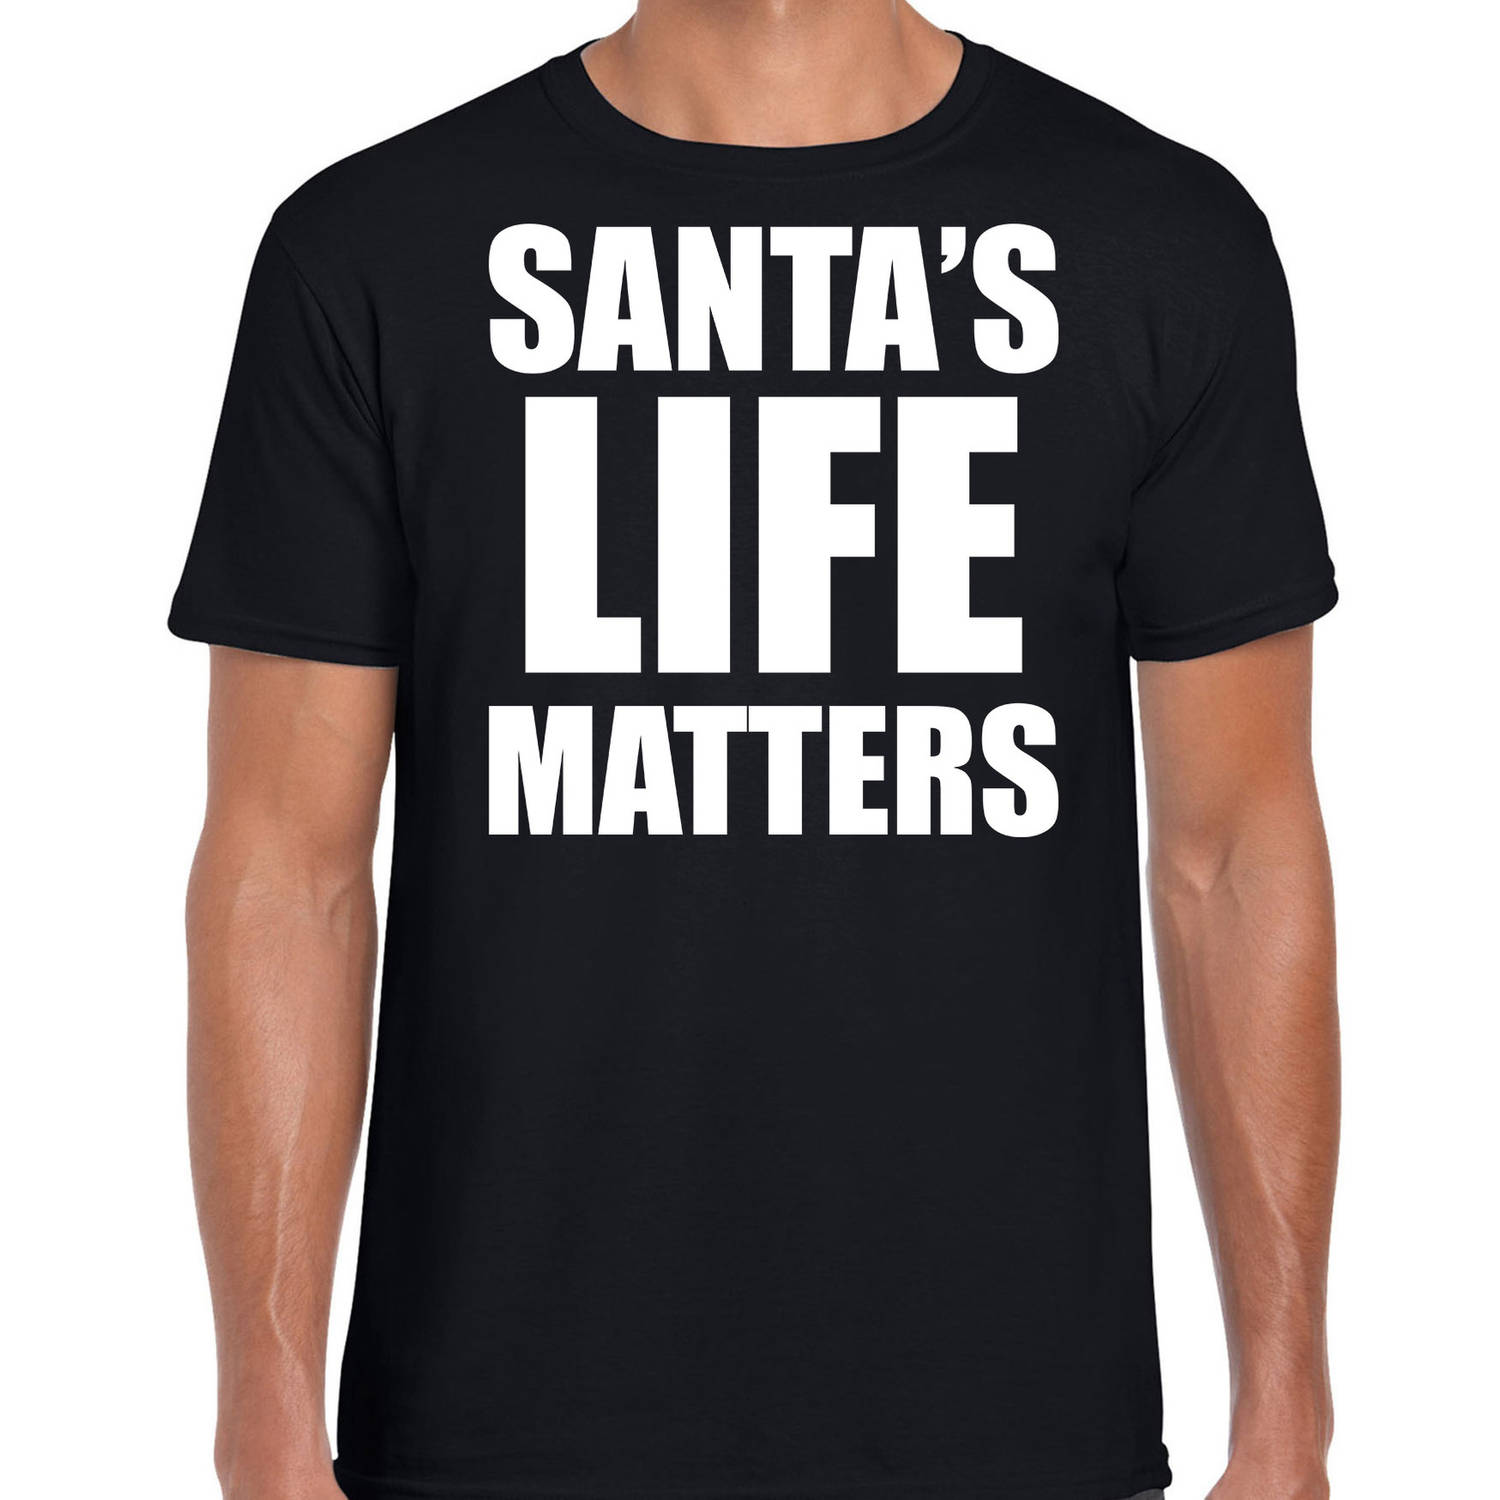 Zwart Kerstshirt / Kerstkleding Santas life matters voor heren S - kerst t-shirts